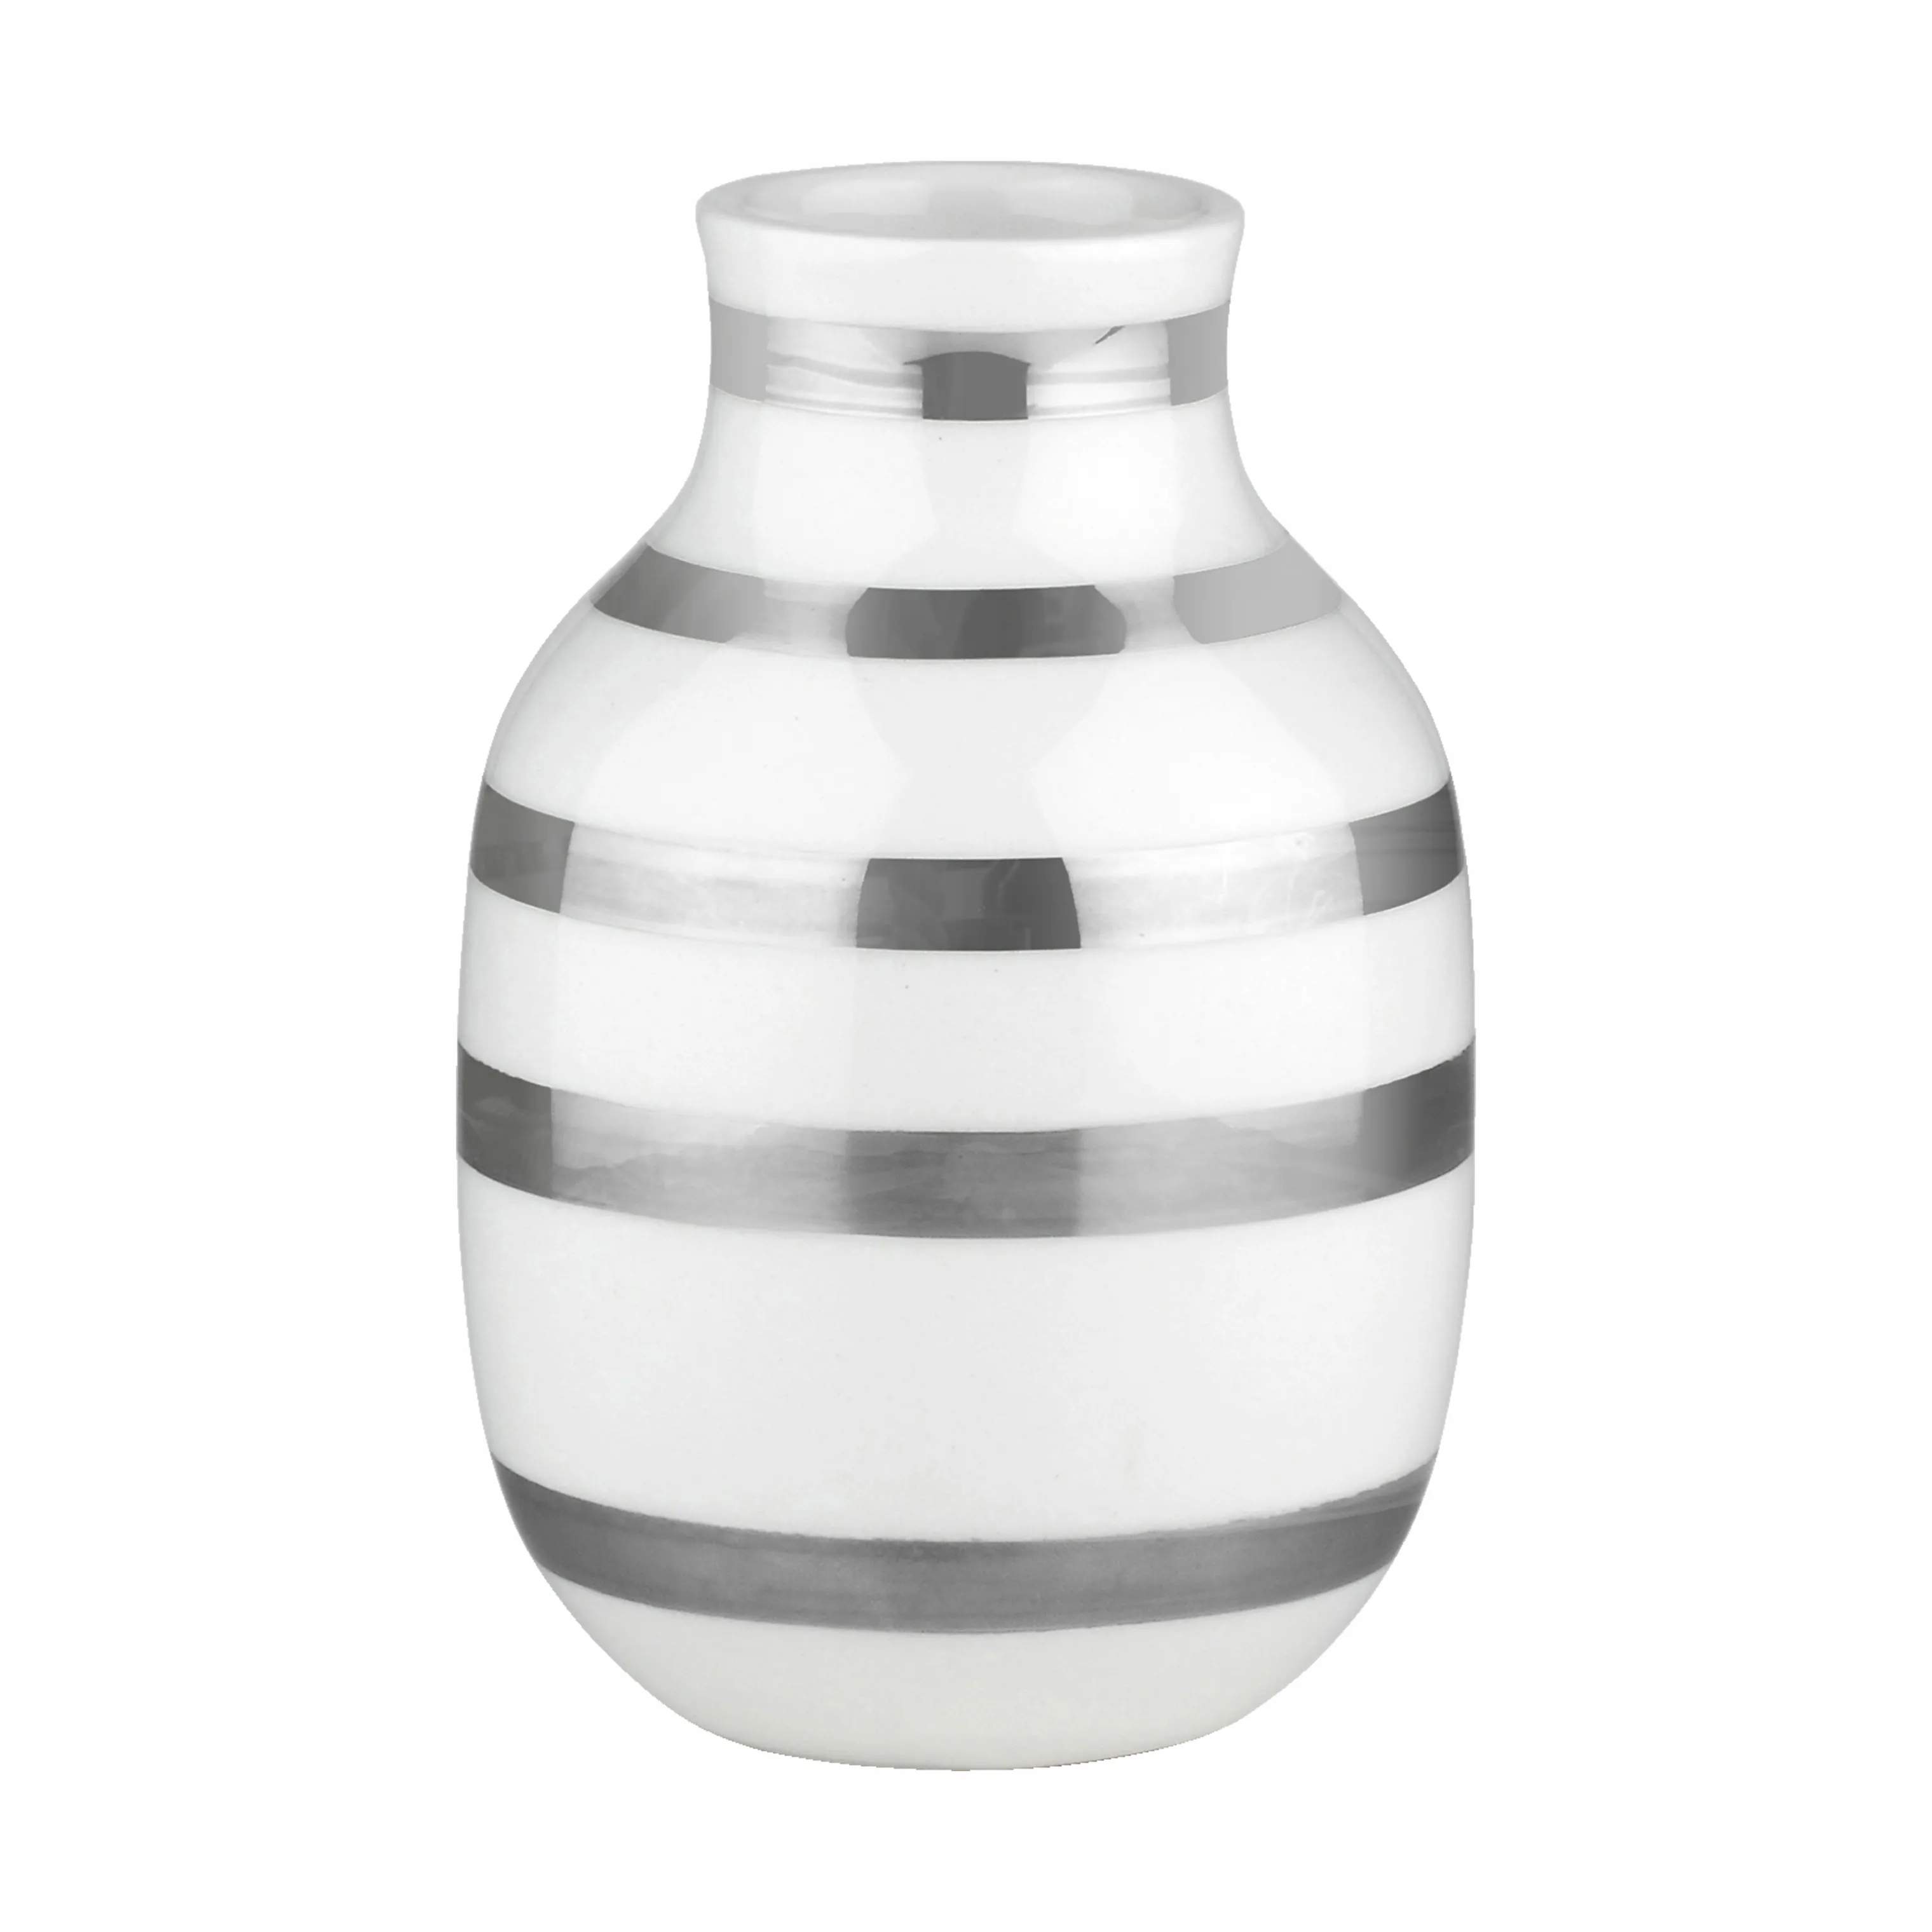 Omaggio Vase, hvid/sølv, large